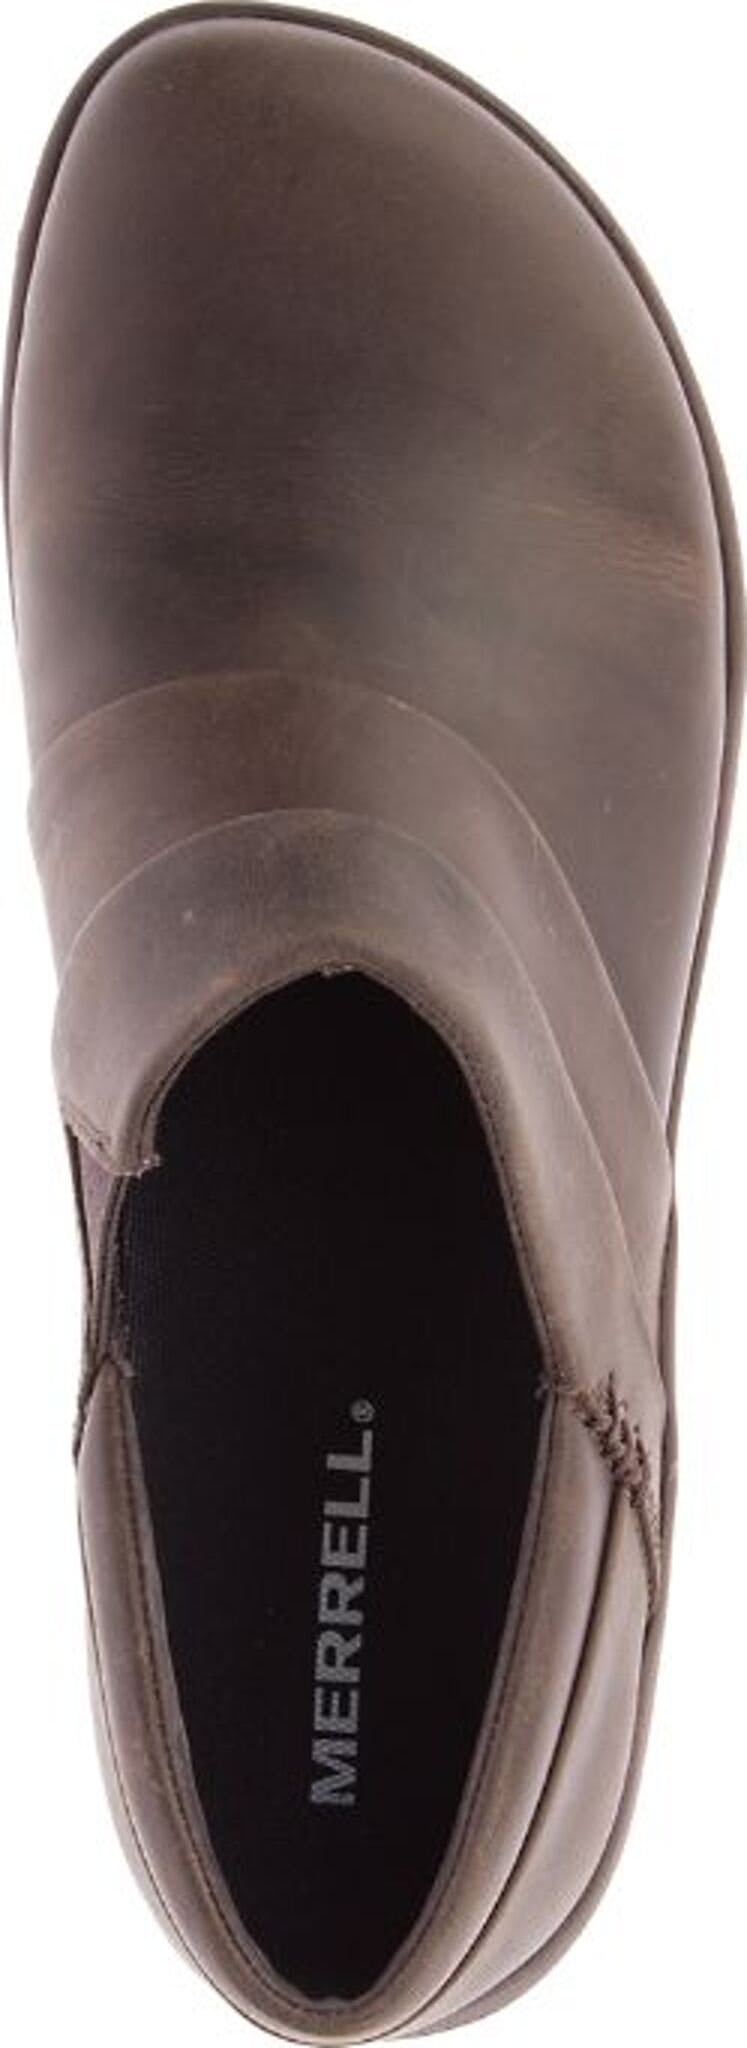 Numéro de l'image de la galerie de produits 5 pour le produit Chaussures Dassie Stitch - Femme